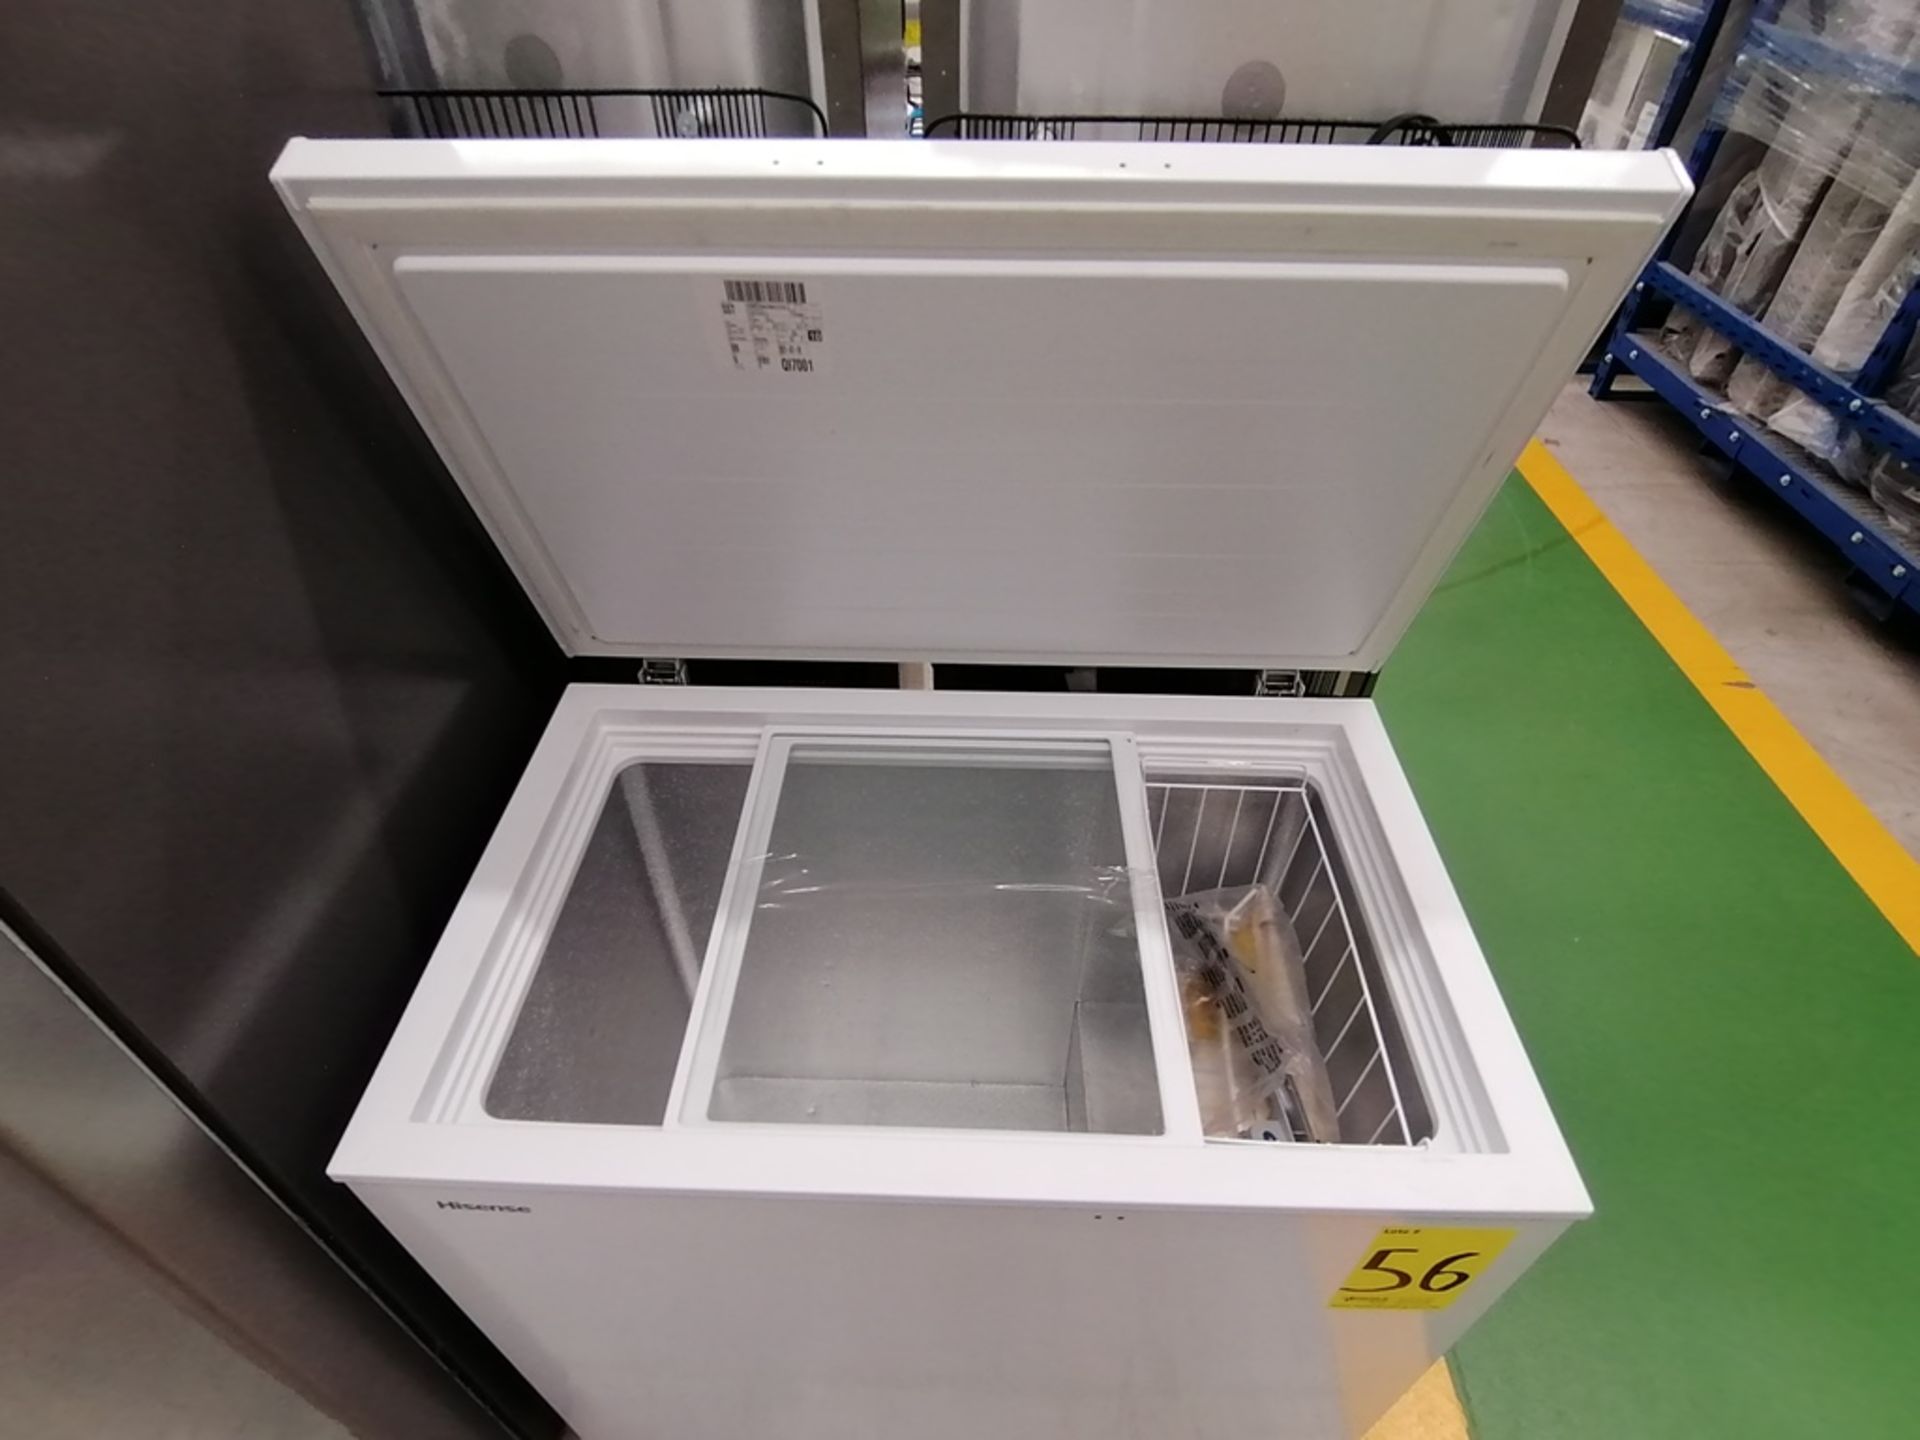 Lote de 2 refrigeradores incluye: 1 Refrigerador con dispensador de agua, Marca Winia, Modelo DFR40 - Image 7 of 17